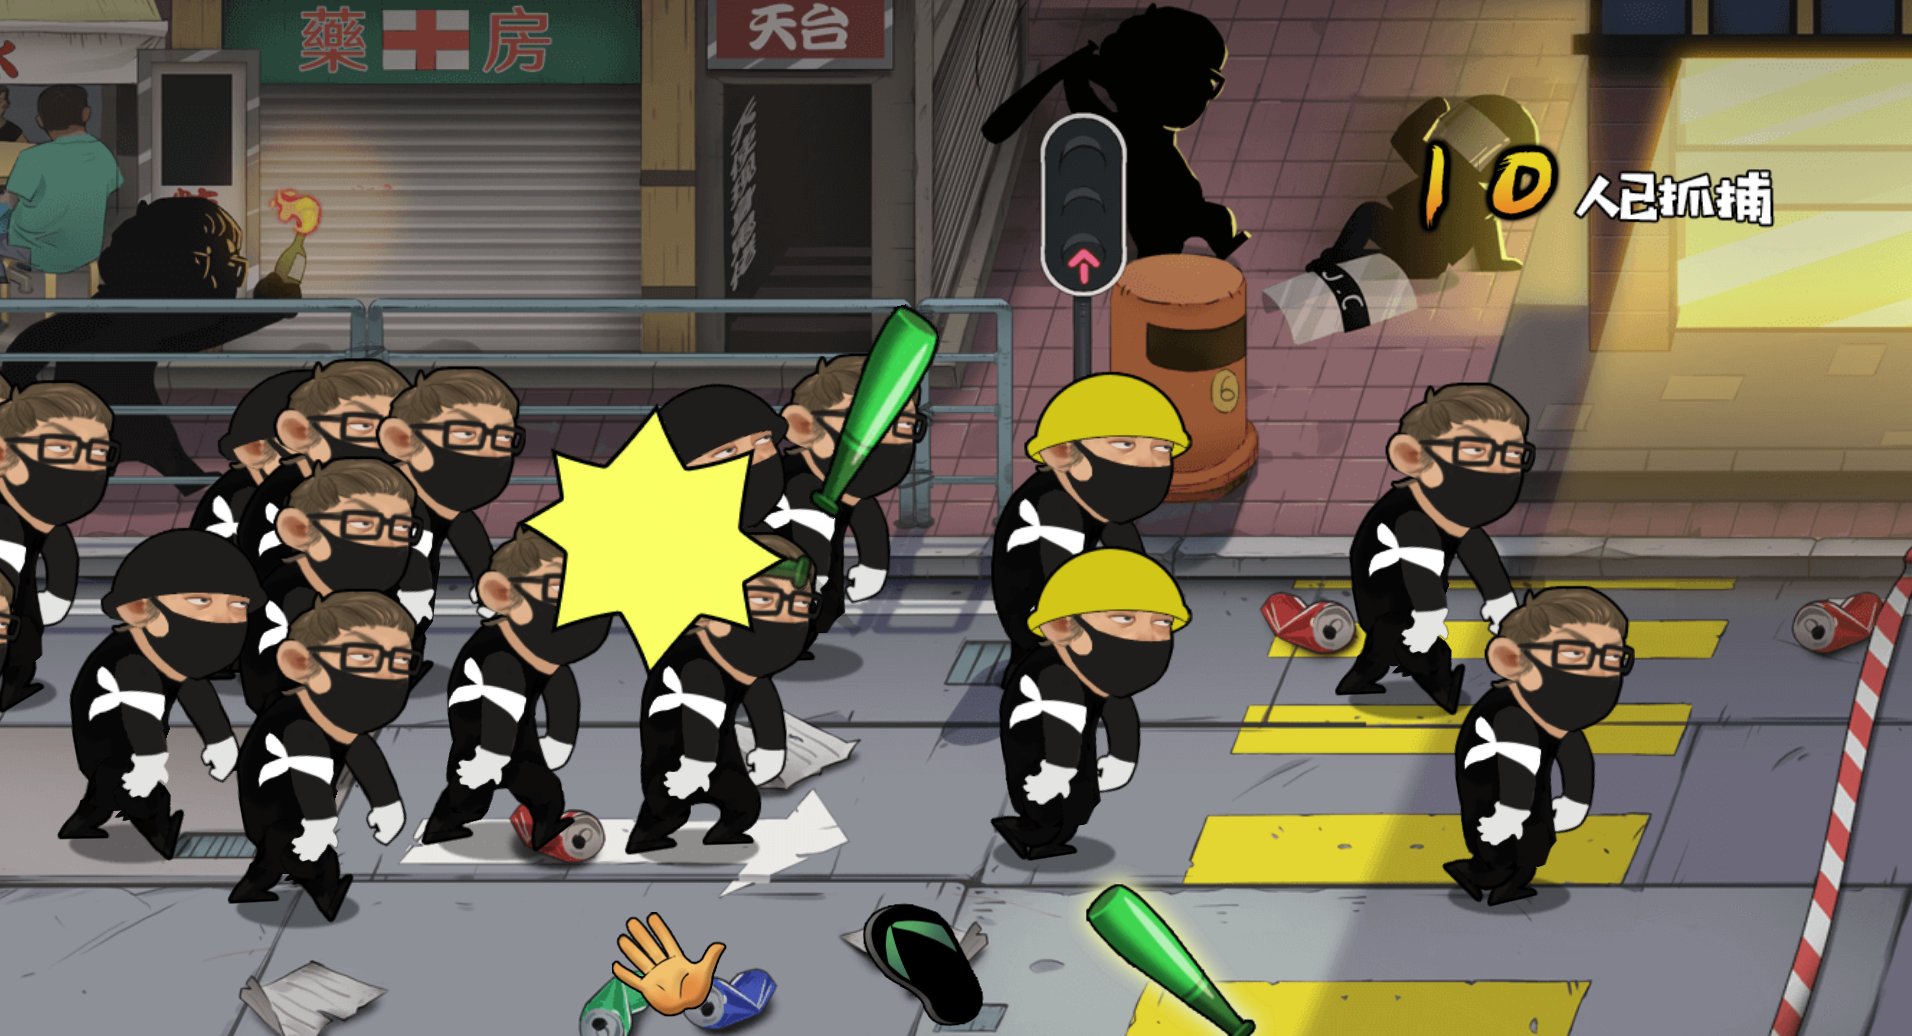 Everyone Hit the Traitors, czyli gra o biciu protestujcych hongkongczykw